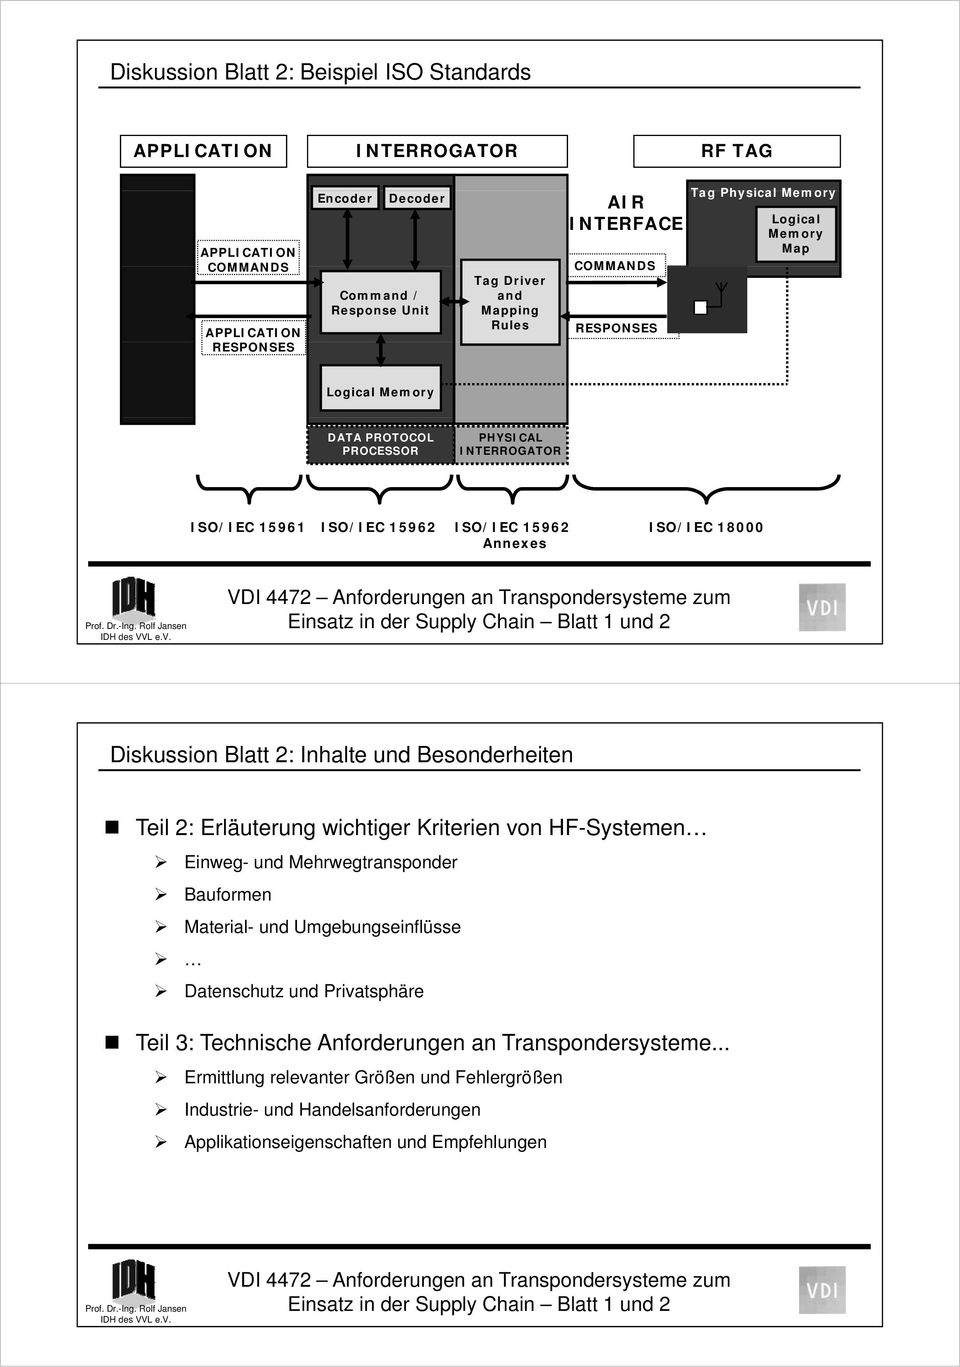 Diskussion Blatt 2: Inhalte und Besonderheiten Teil 2: Erläuterung wichtiger Kriterien von HF-Systemen Einweg- und Mehrwegtransponder Bauformen Material- und Umgebungseinflüsse Datenschutz und